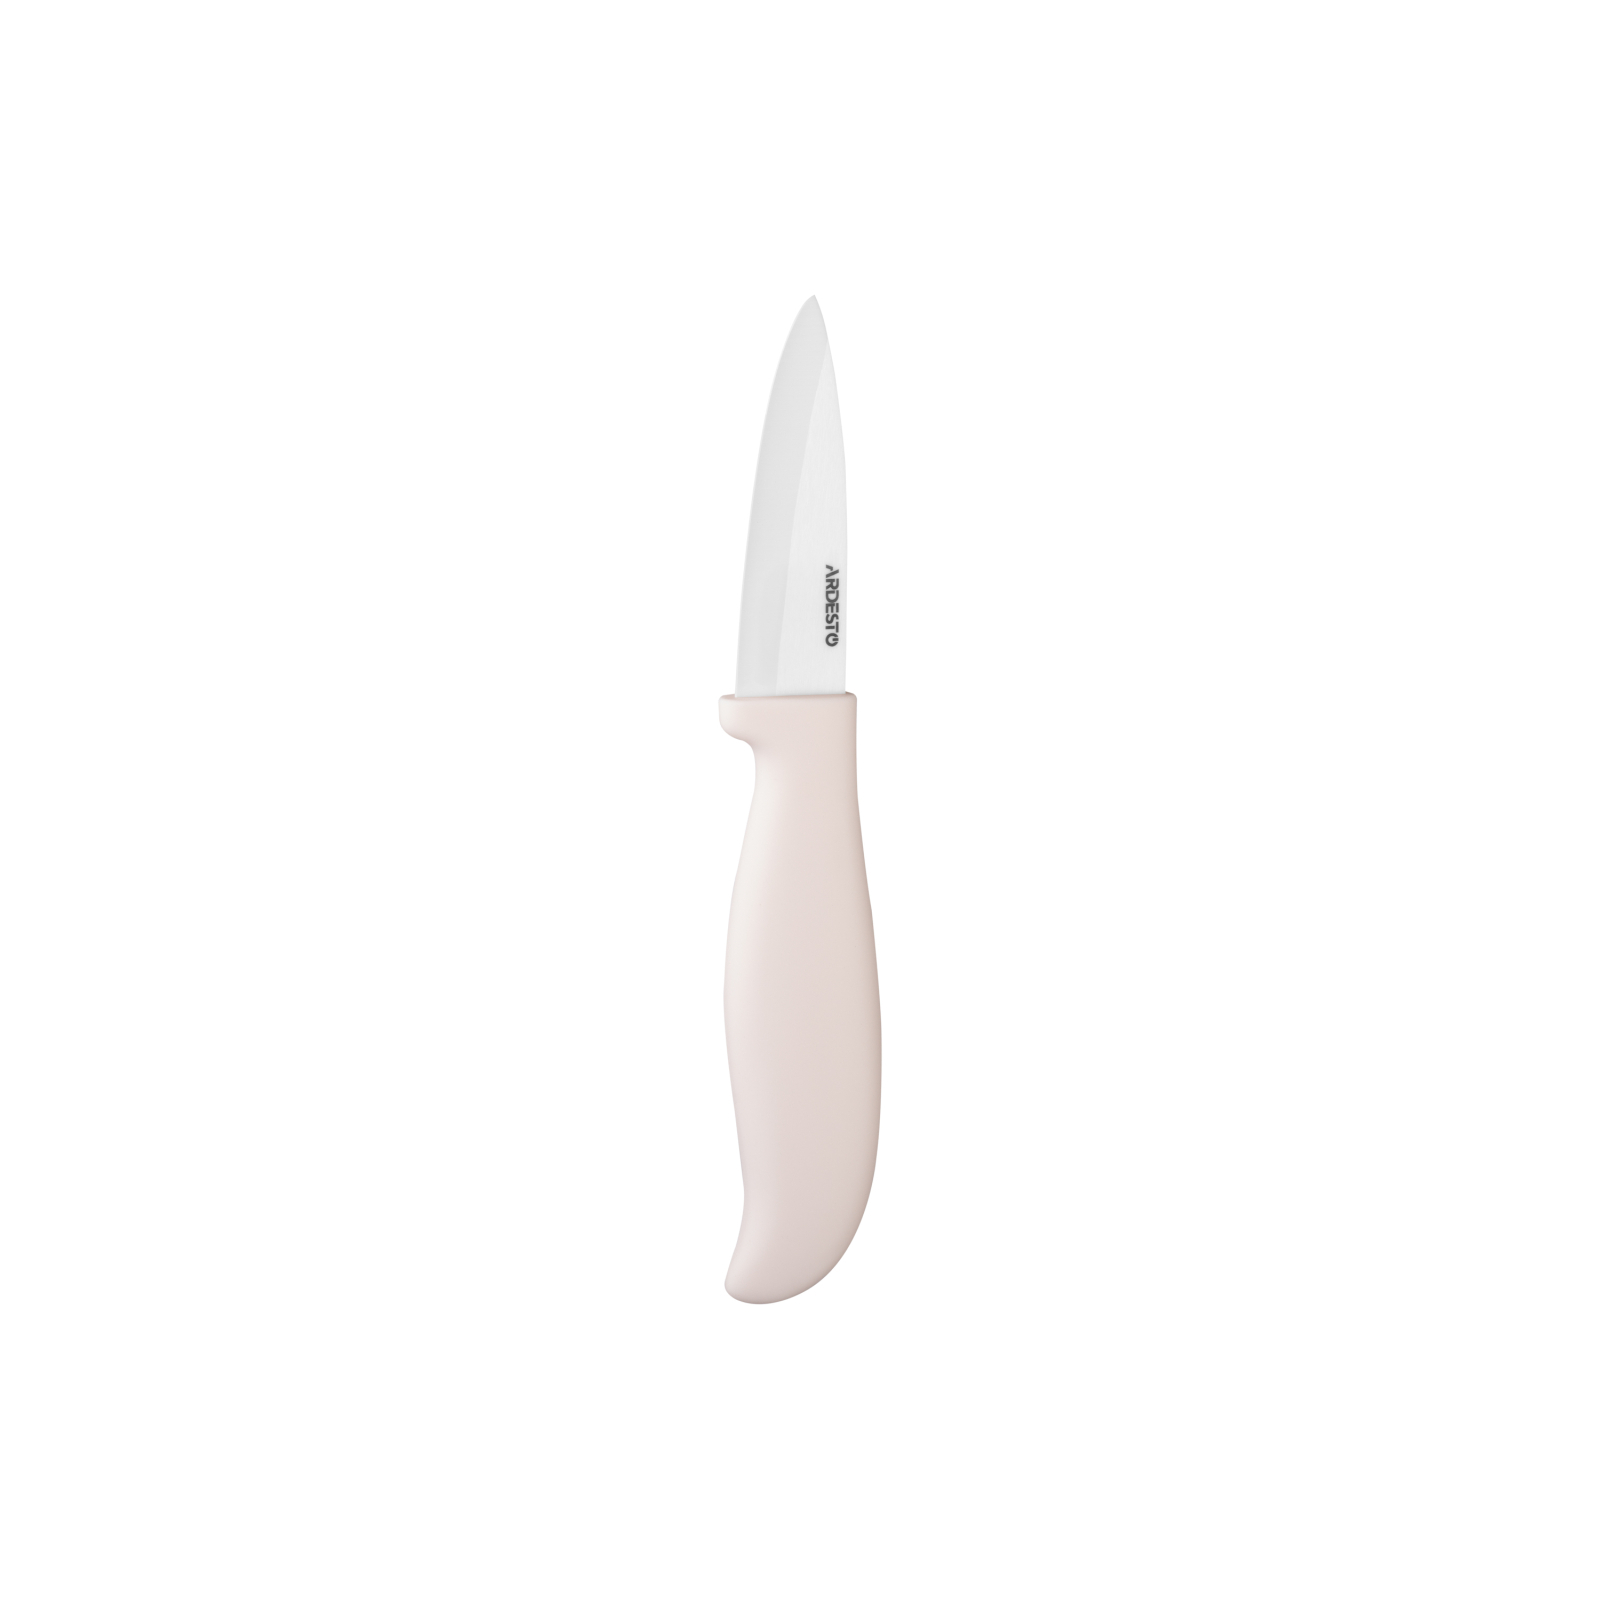 Кухонный нож Ardesto Fresh 18.5 см Grey (AR2118CG)